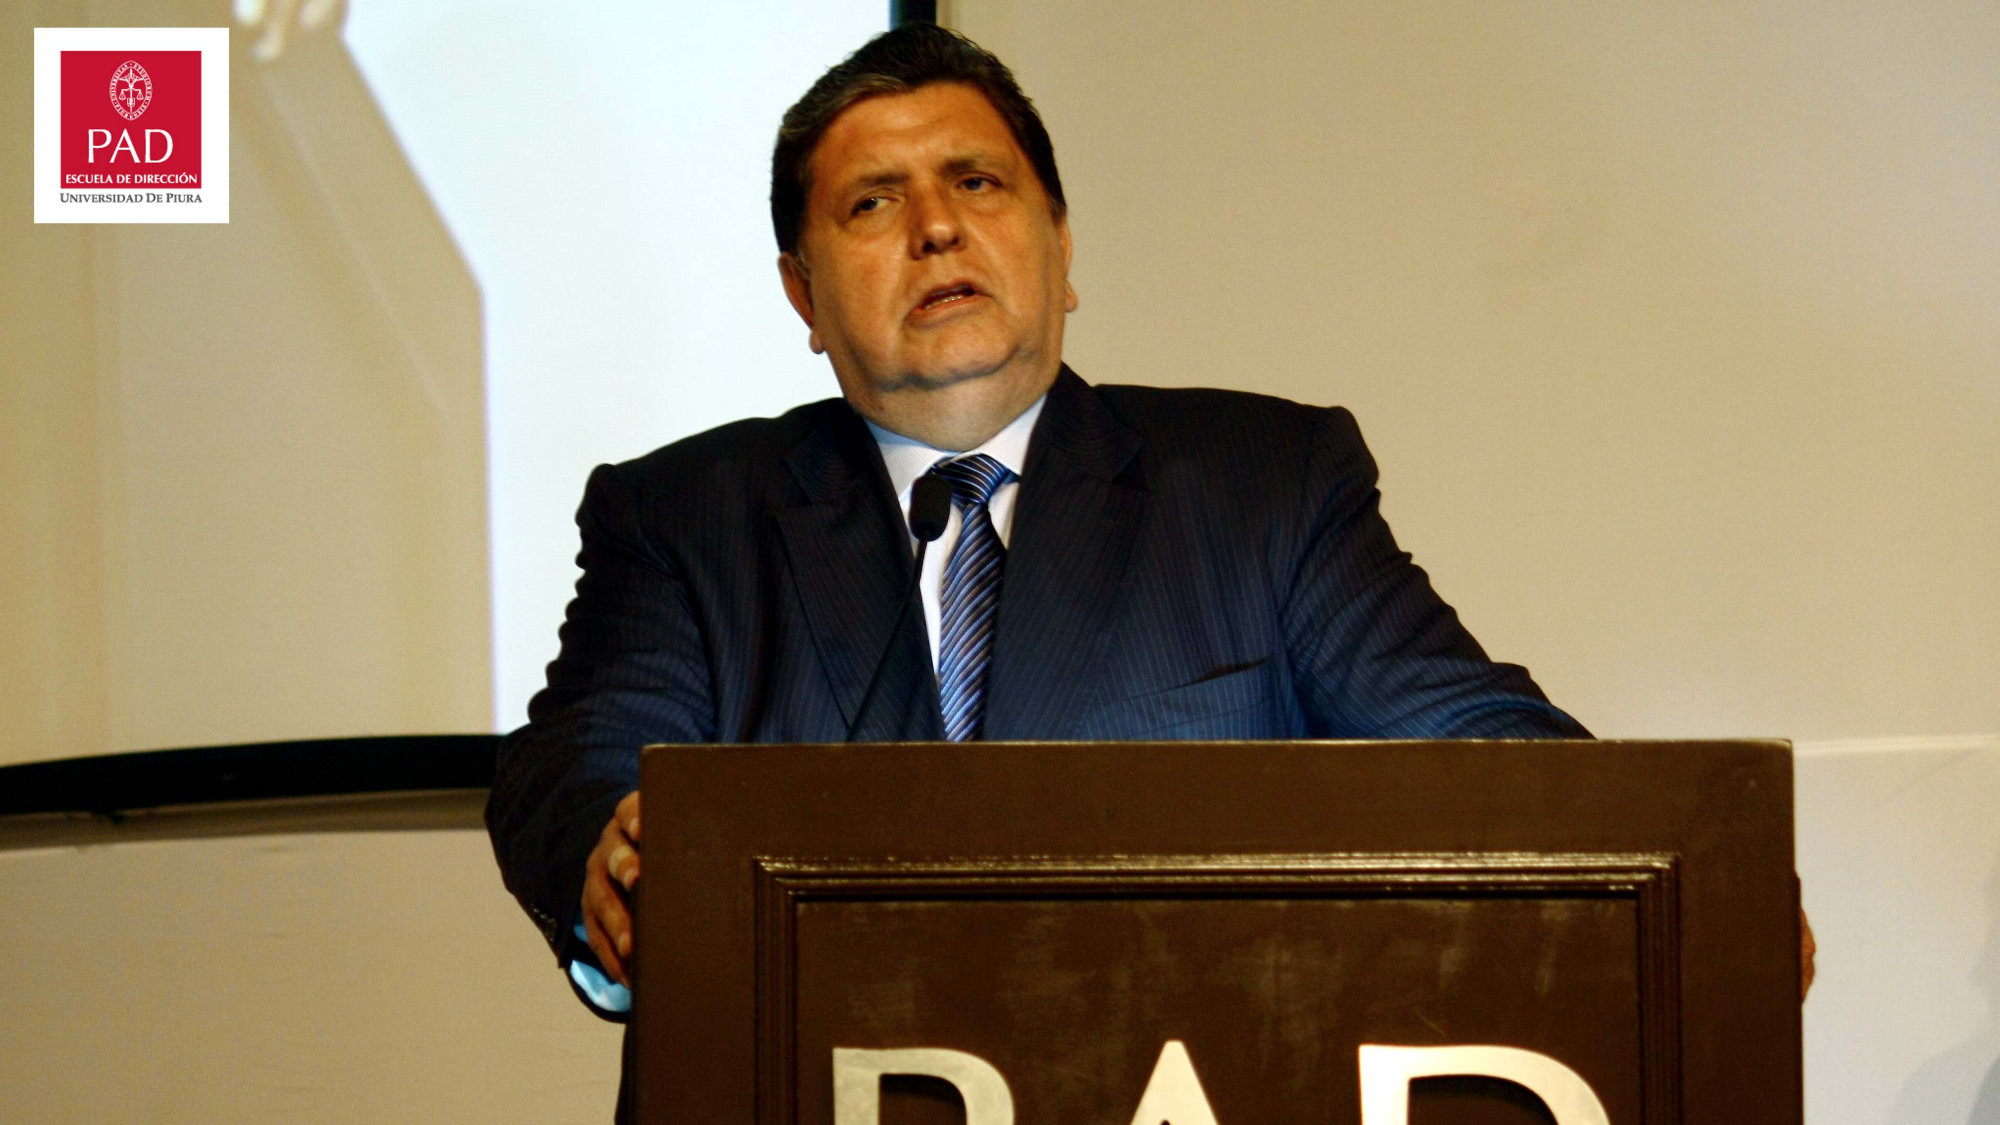 En su visita al PAD, el presidente Alan García Pérez dijo que el crecimiento de la economía dependía de los peruanos.